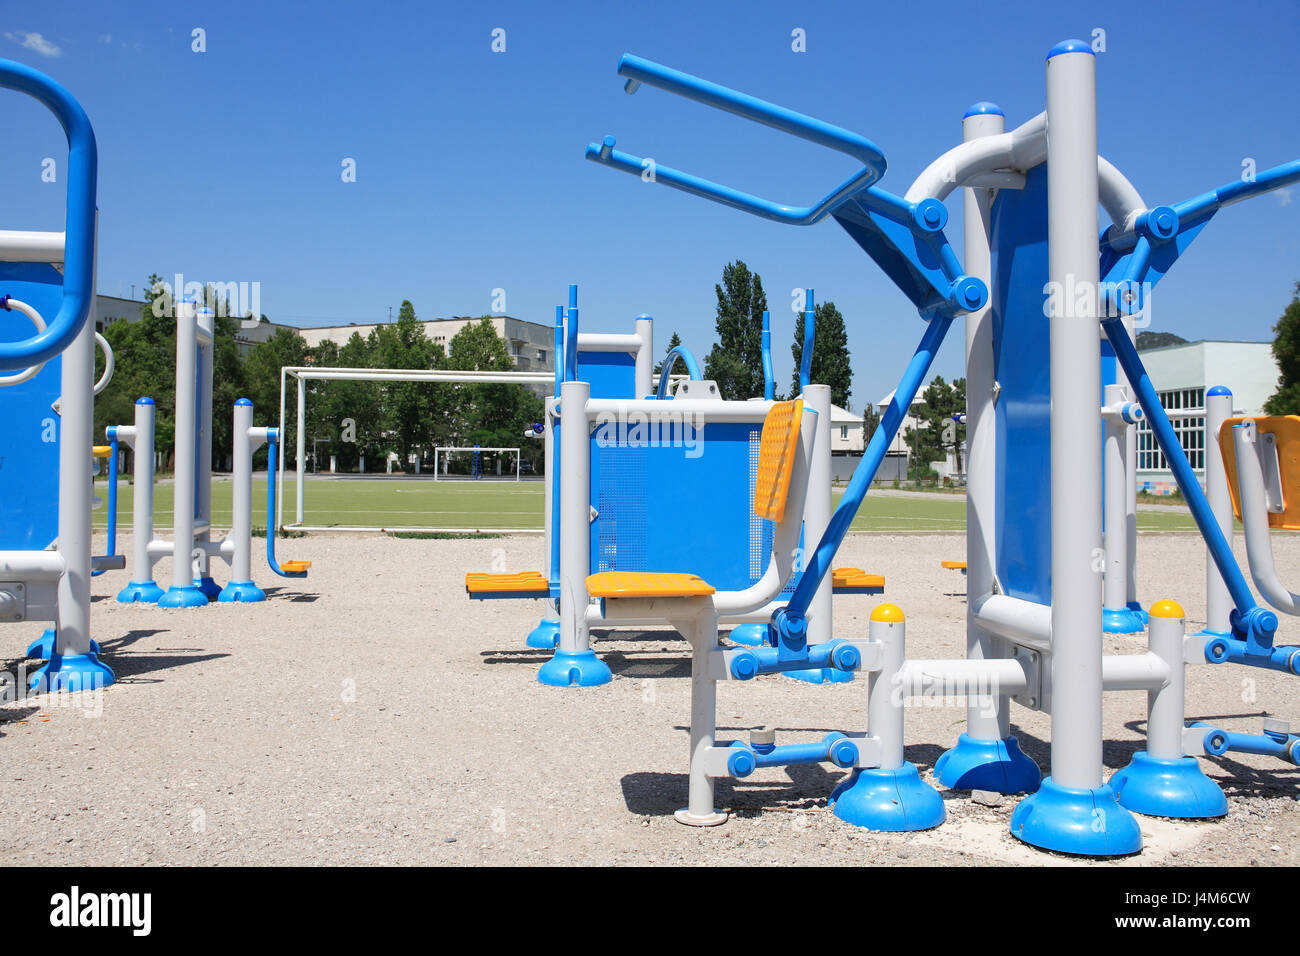 Nuevo y moderno equipo de ejercicio al aire libre bajo un cielo azul Foto de stock